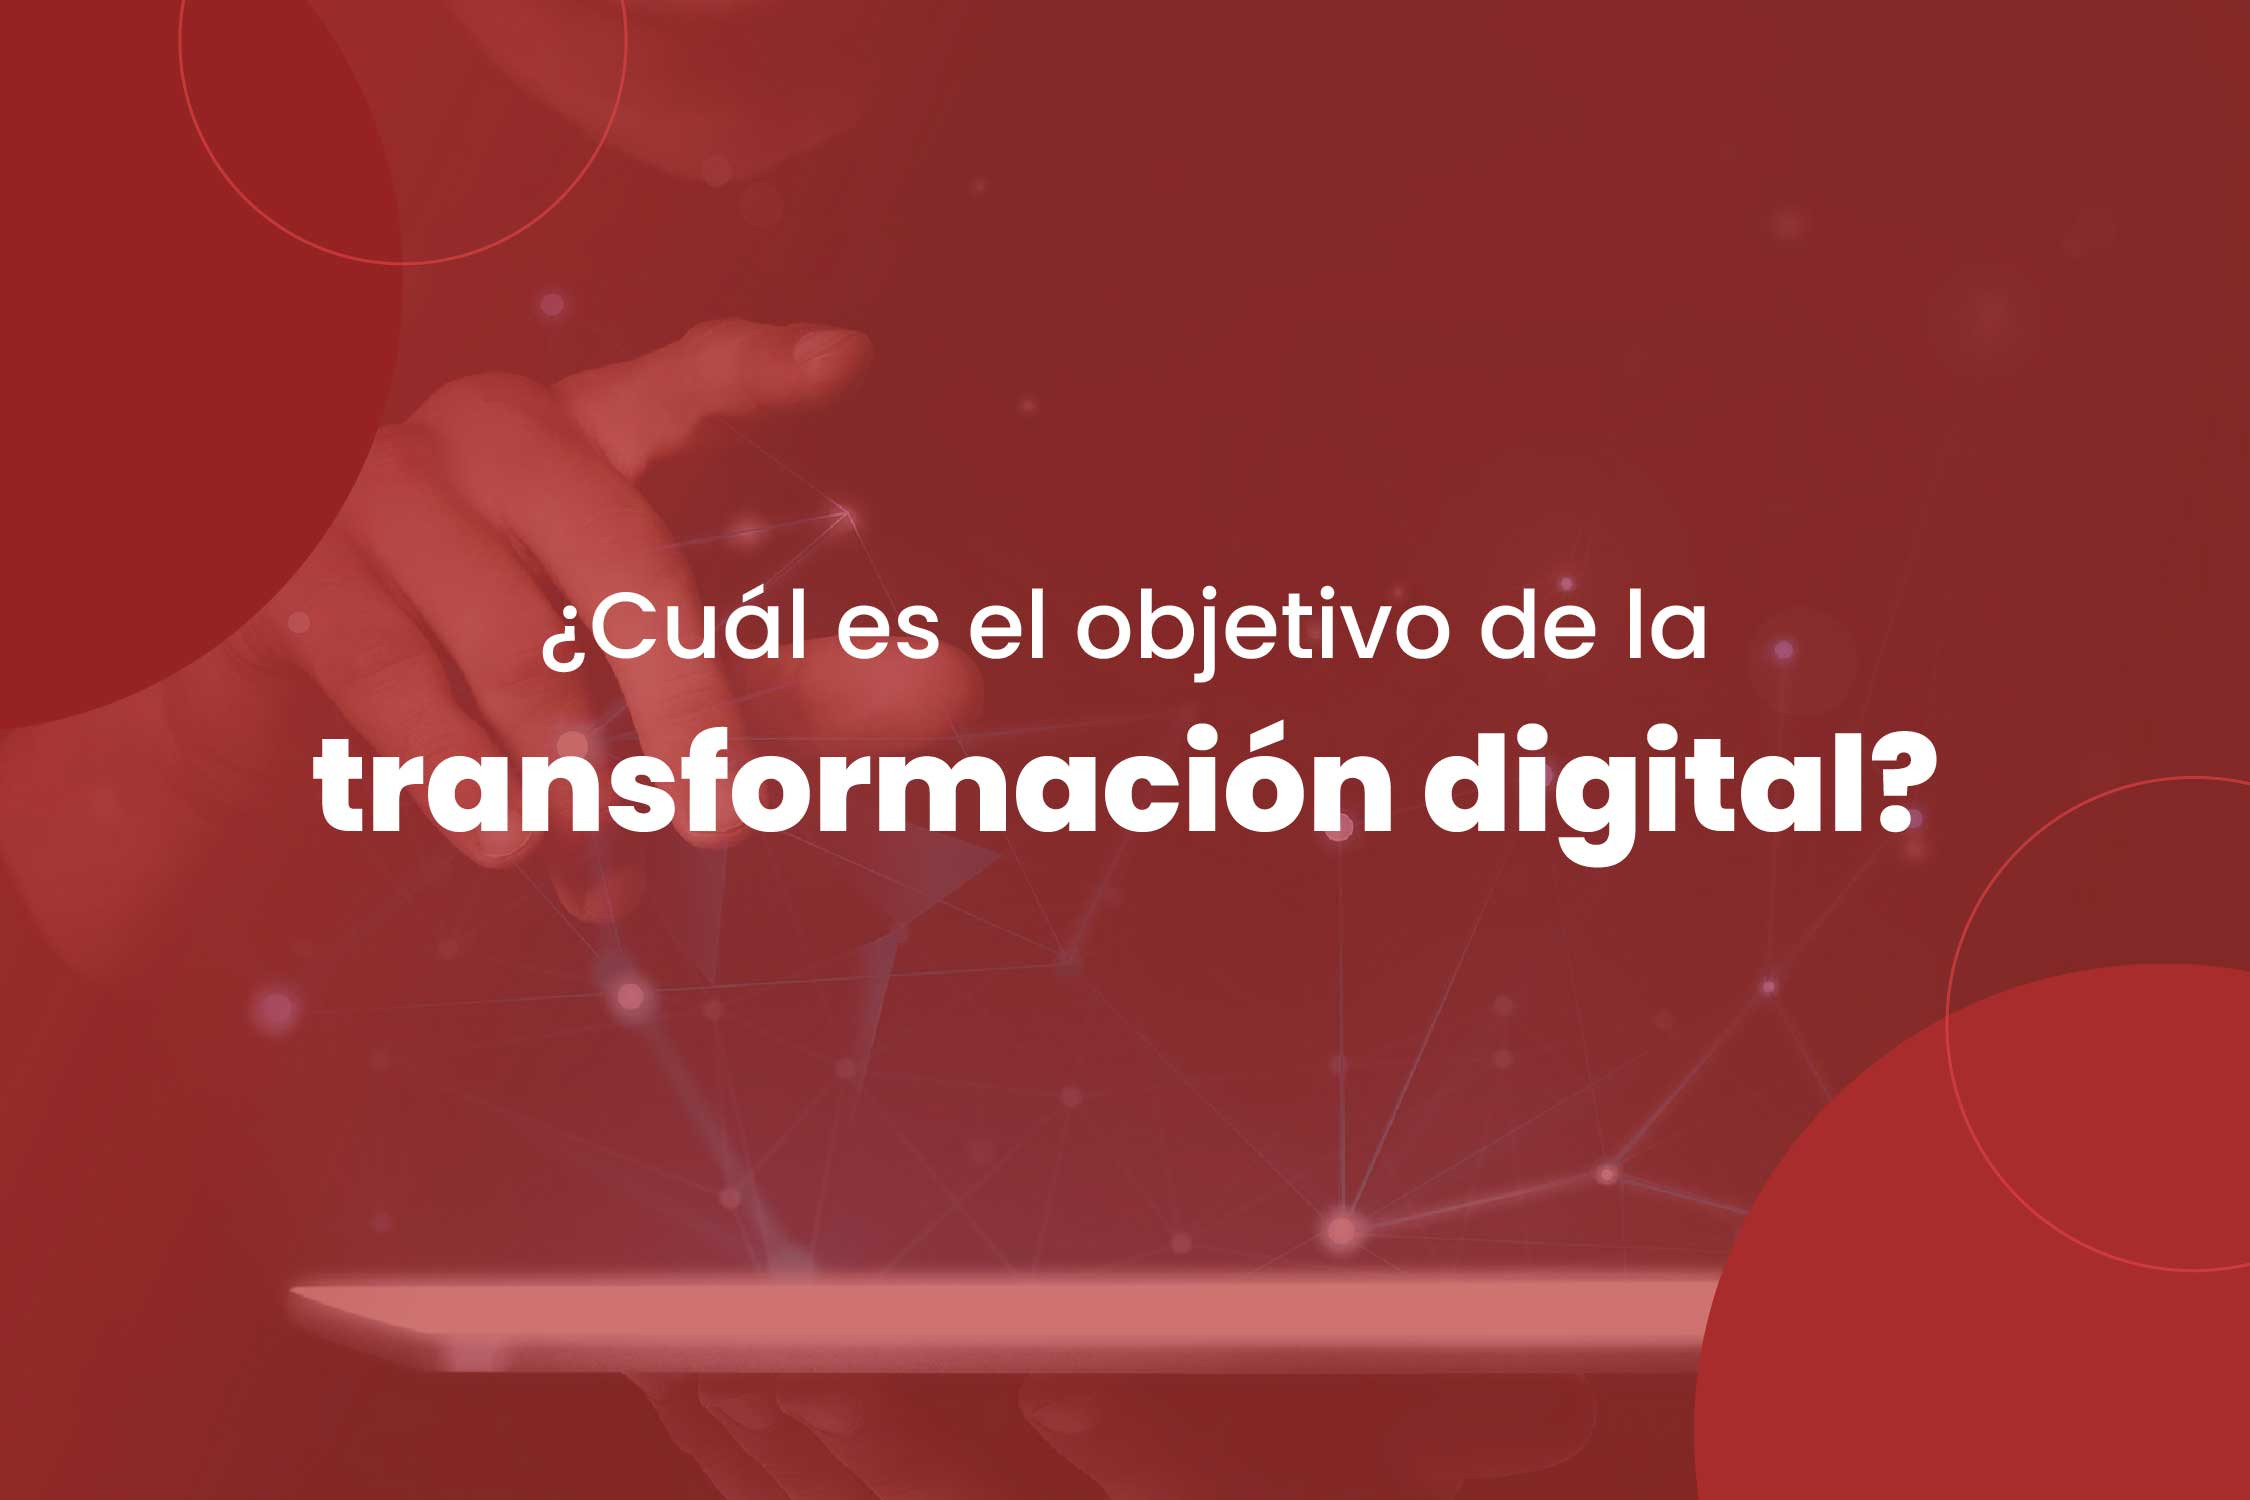 cuál es el objetivo de la transformación digital